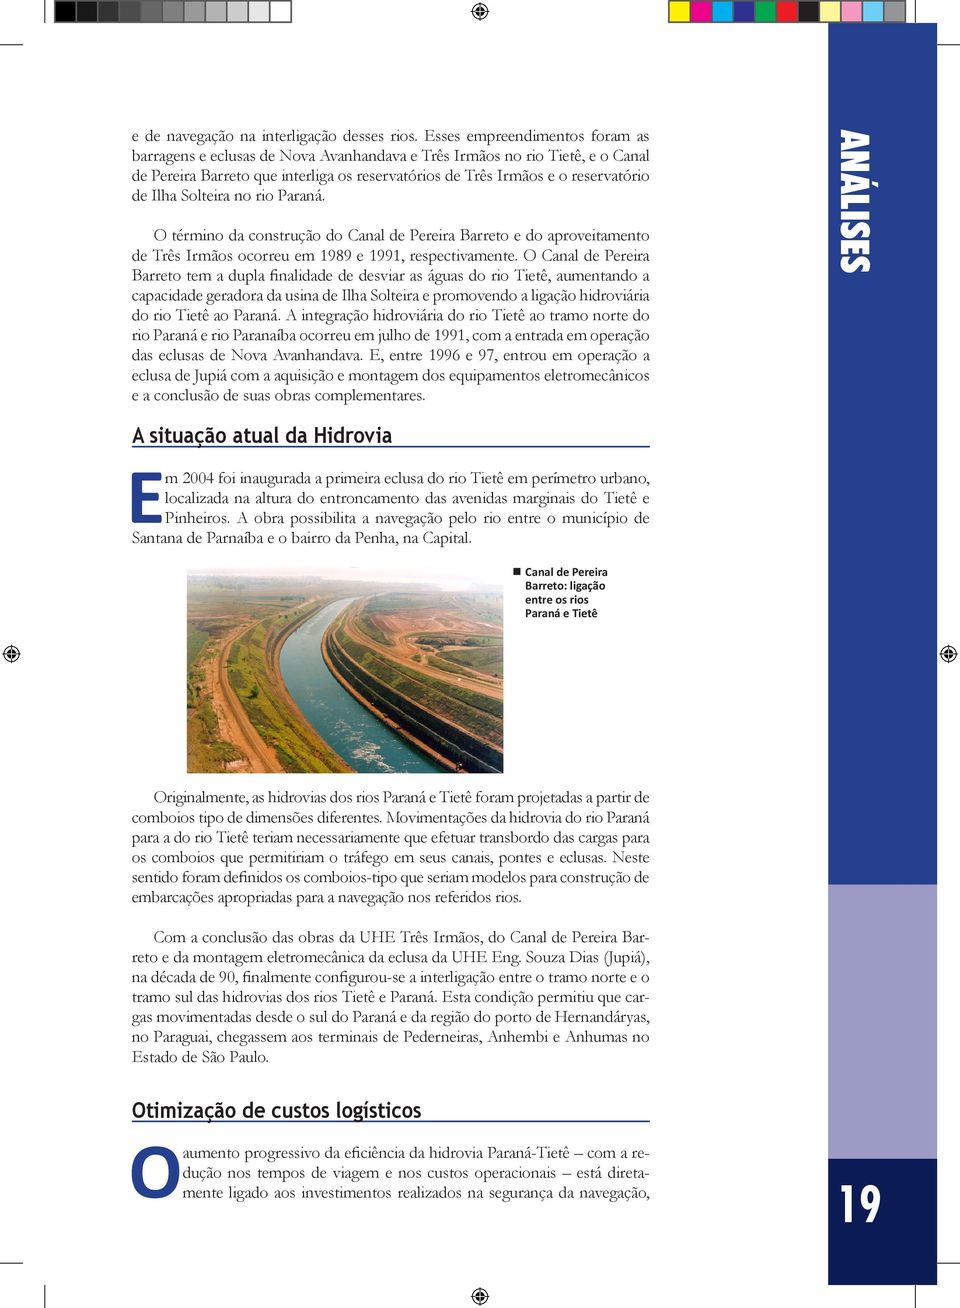 Solteira no rio Paraná. O término da construção do Canal de Pereira Barreto e do aproveitamento de Três Irmãos ocorreu em 1989 e 1991, respectivamente.